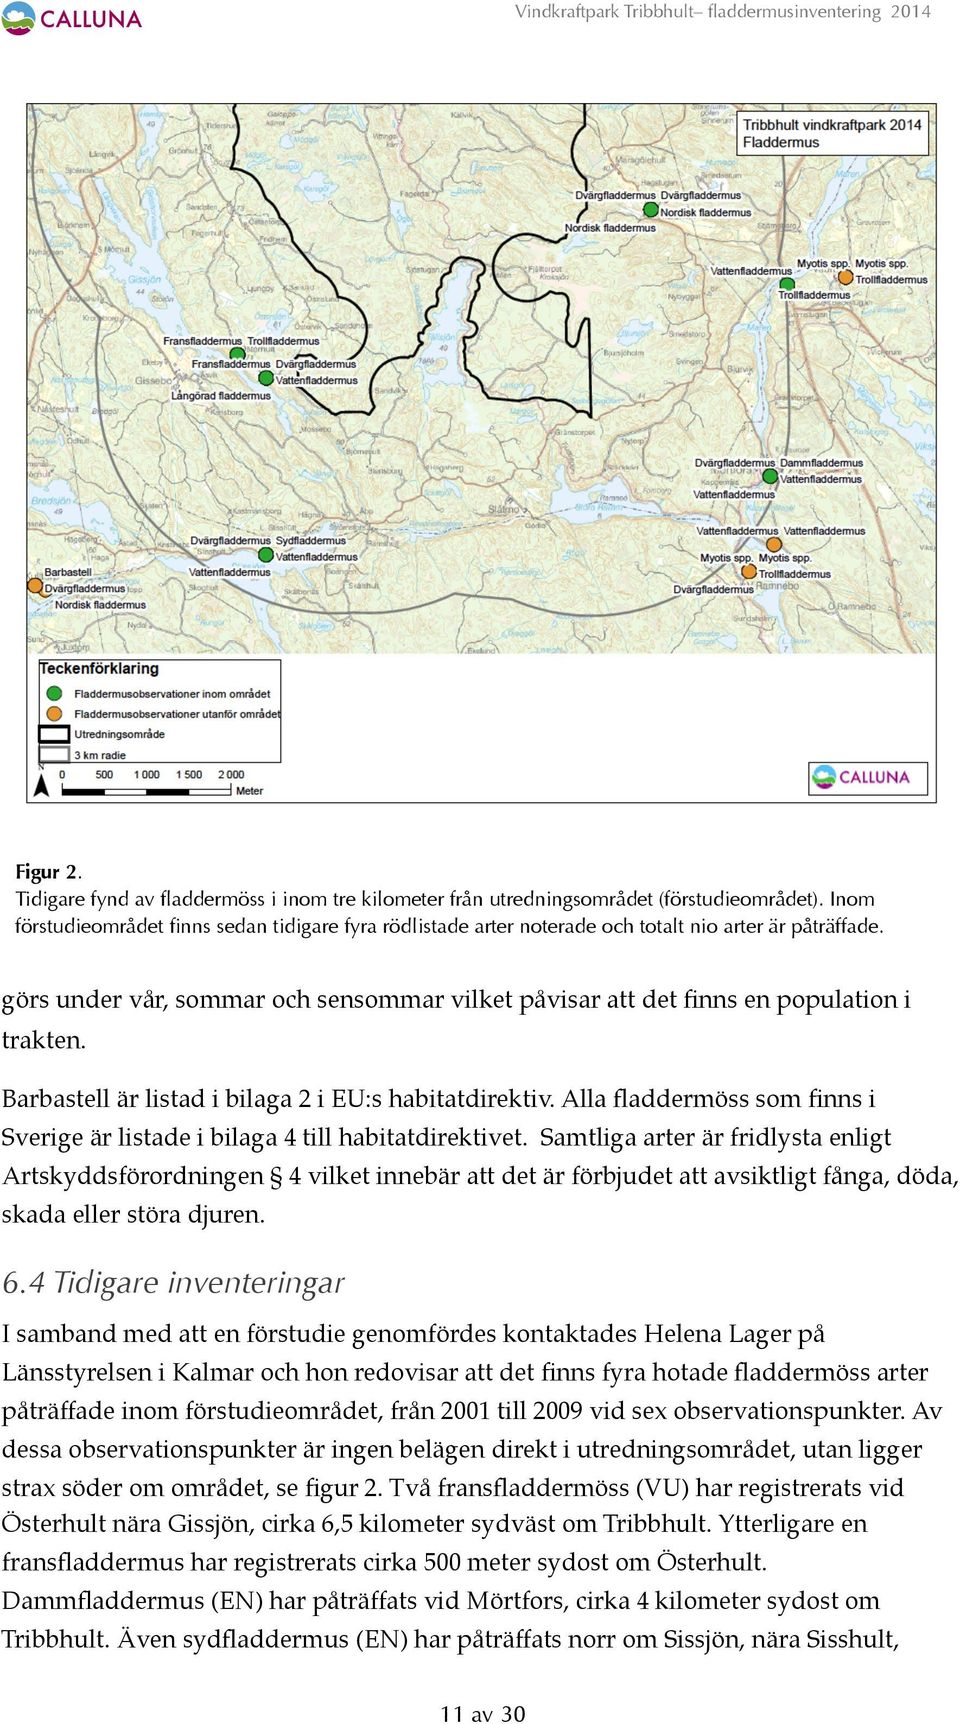 Barbastell är listad i bilaga 2 i EU:s habitatdirektiv. Alla fladdermöss som finns i Sverige är listade i bilaga 4 till habitatdirektivet.